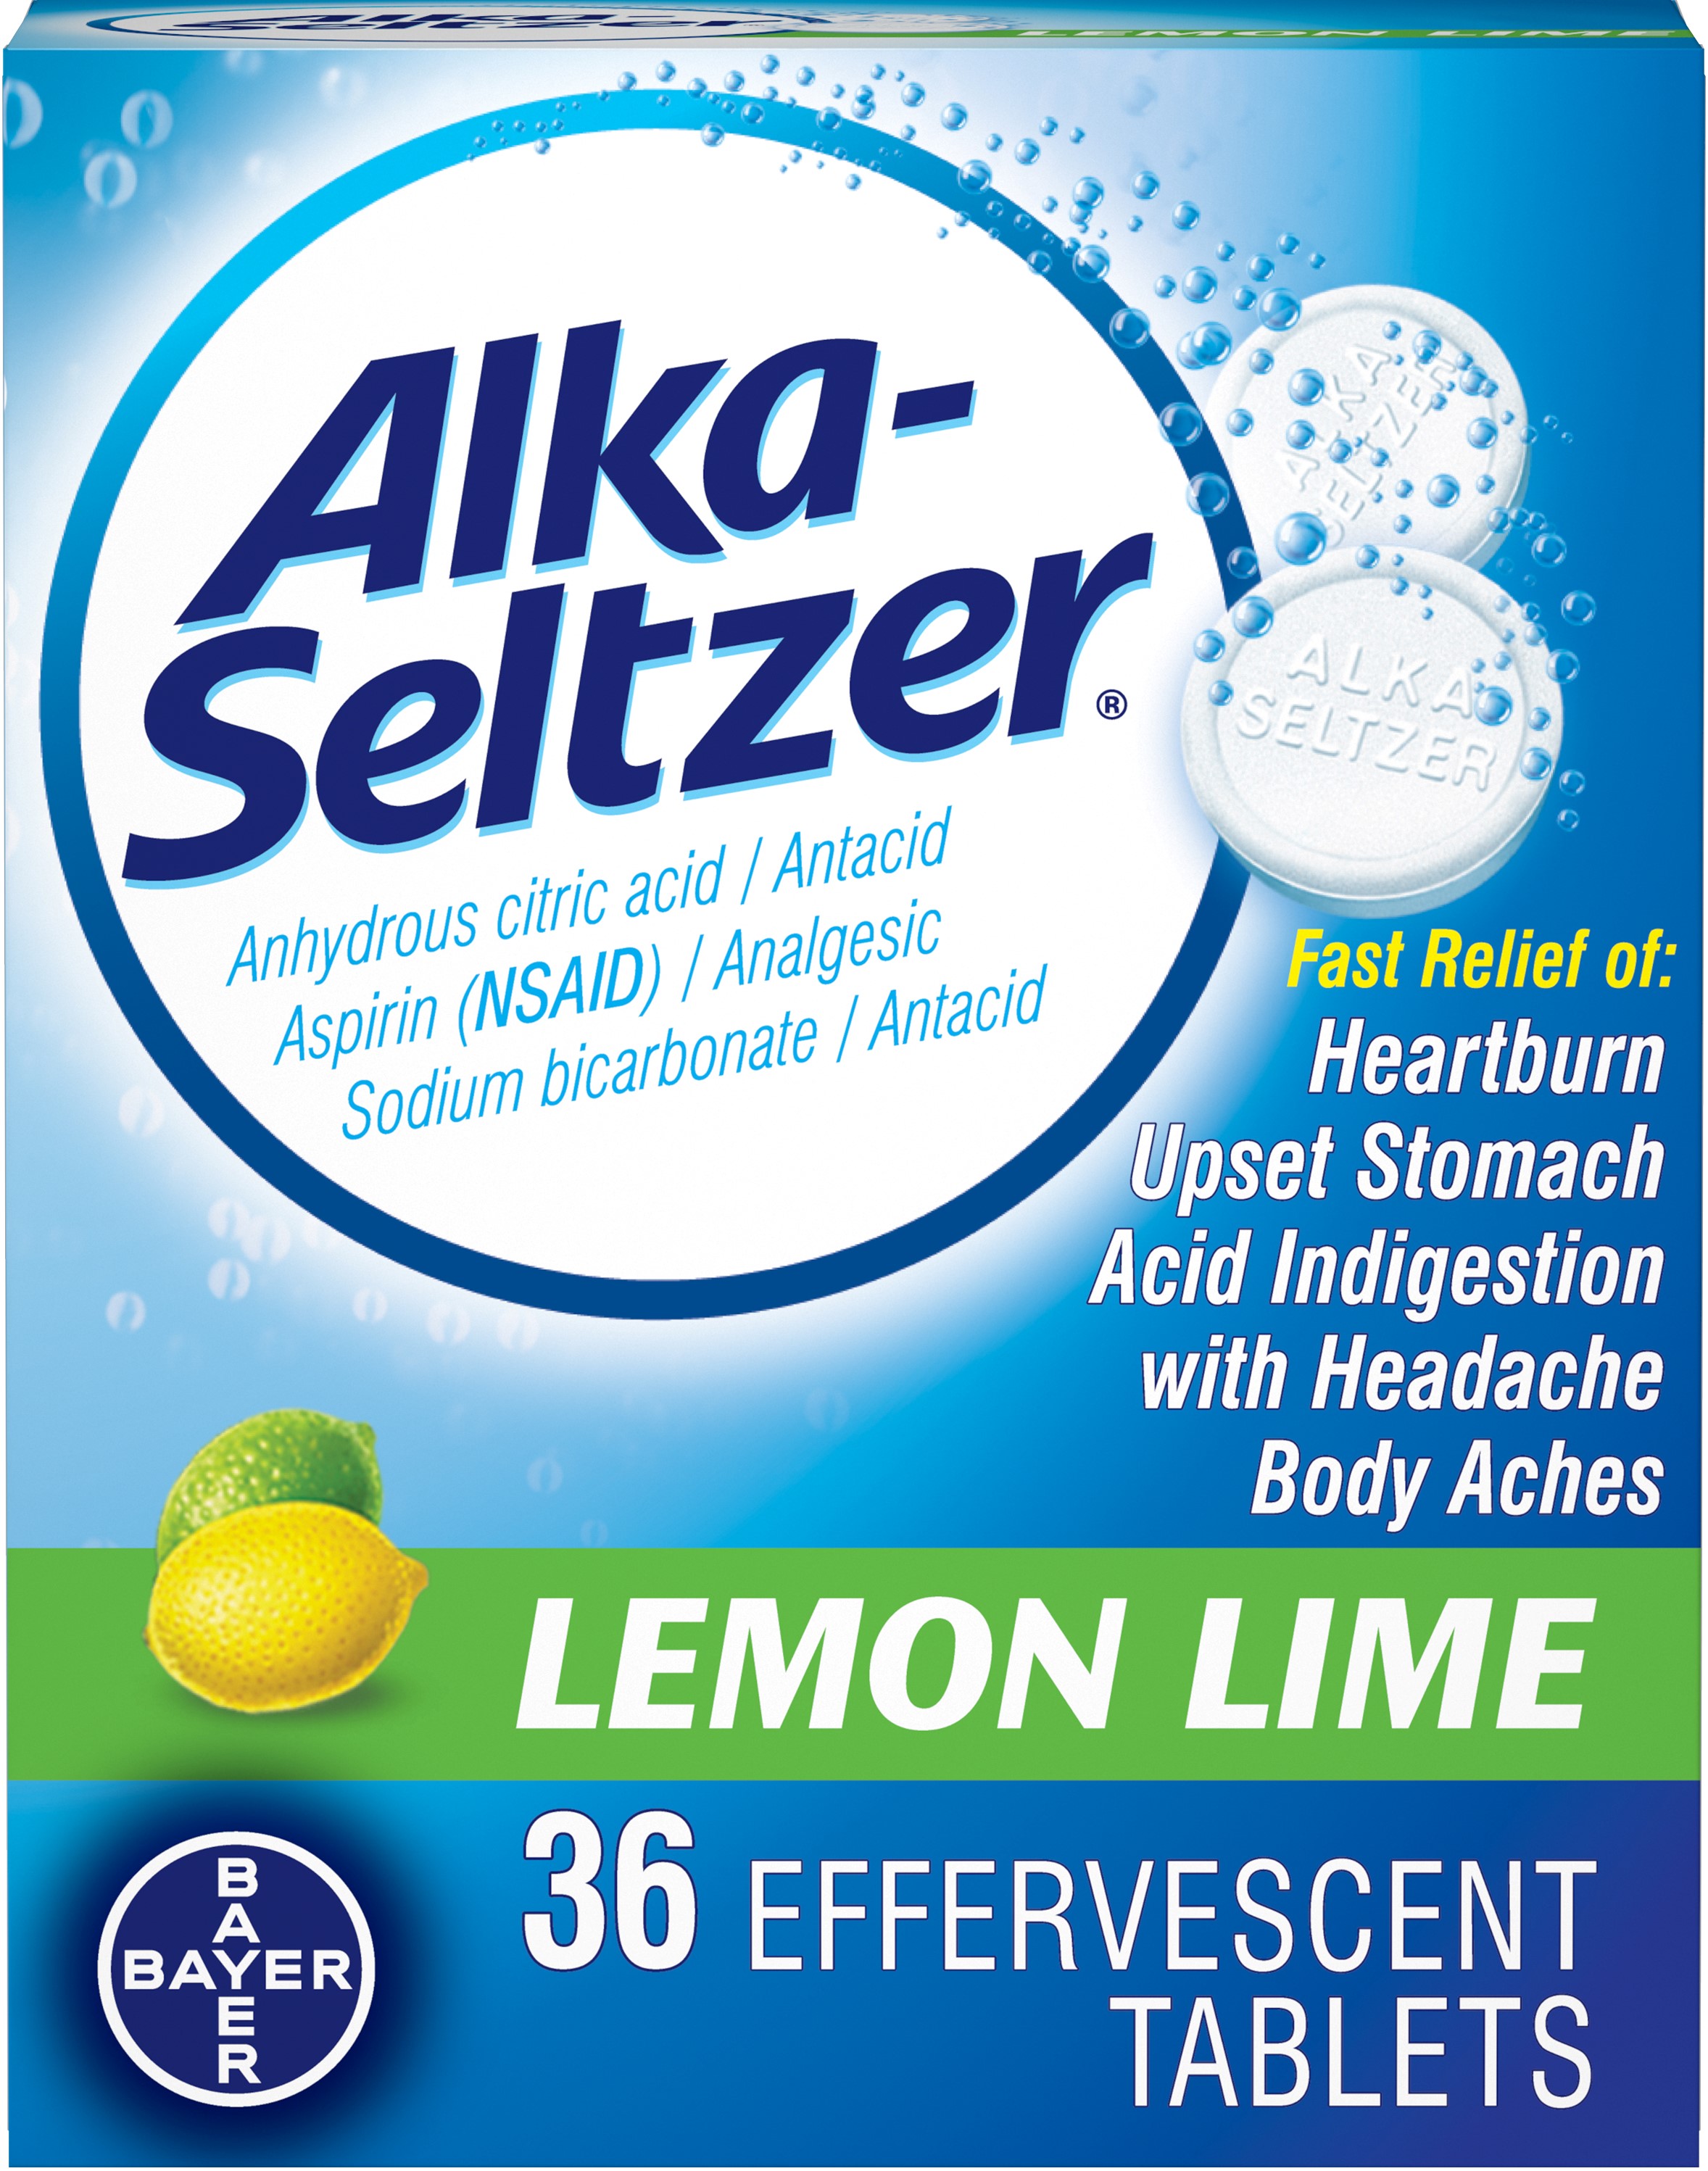 Alka-Seltzer Lemon Lime 36 Effervescent Tablets (Pack of 2) - image 1 of 5